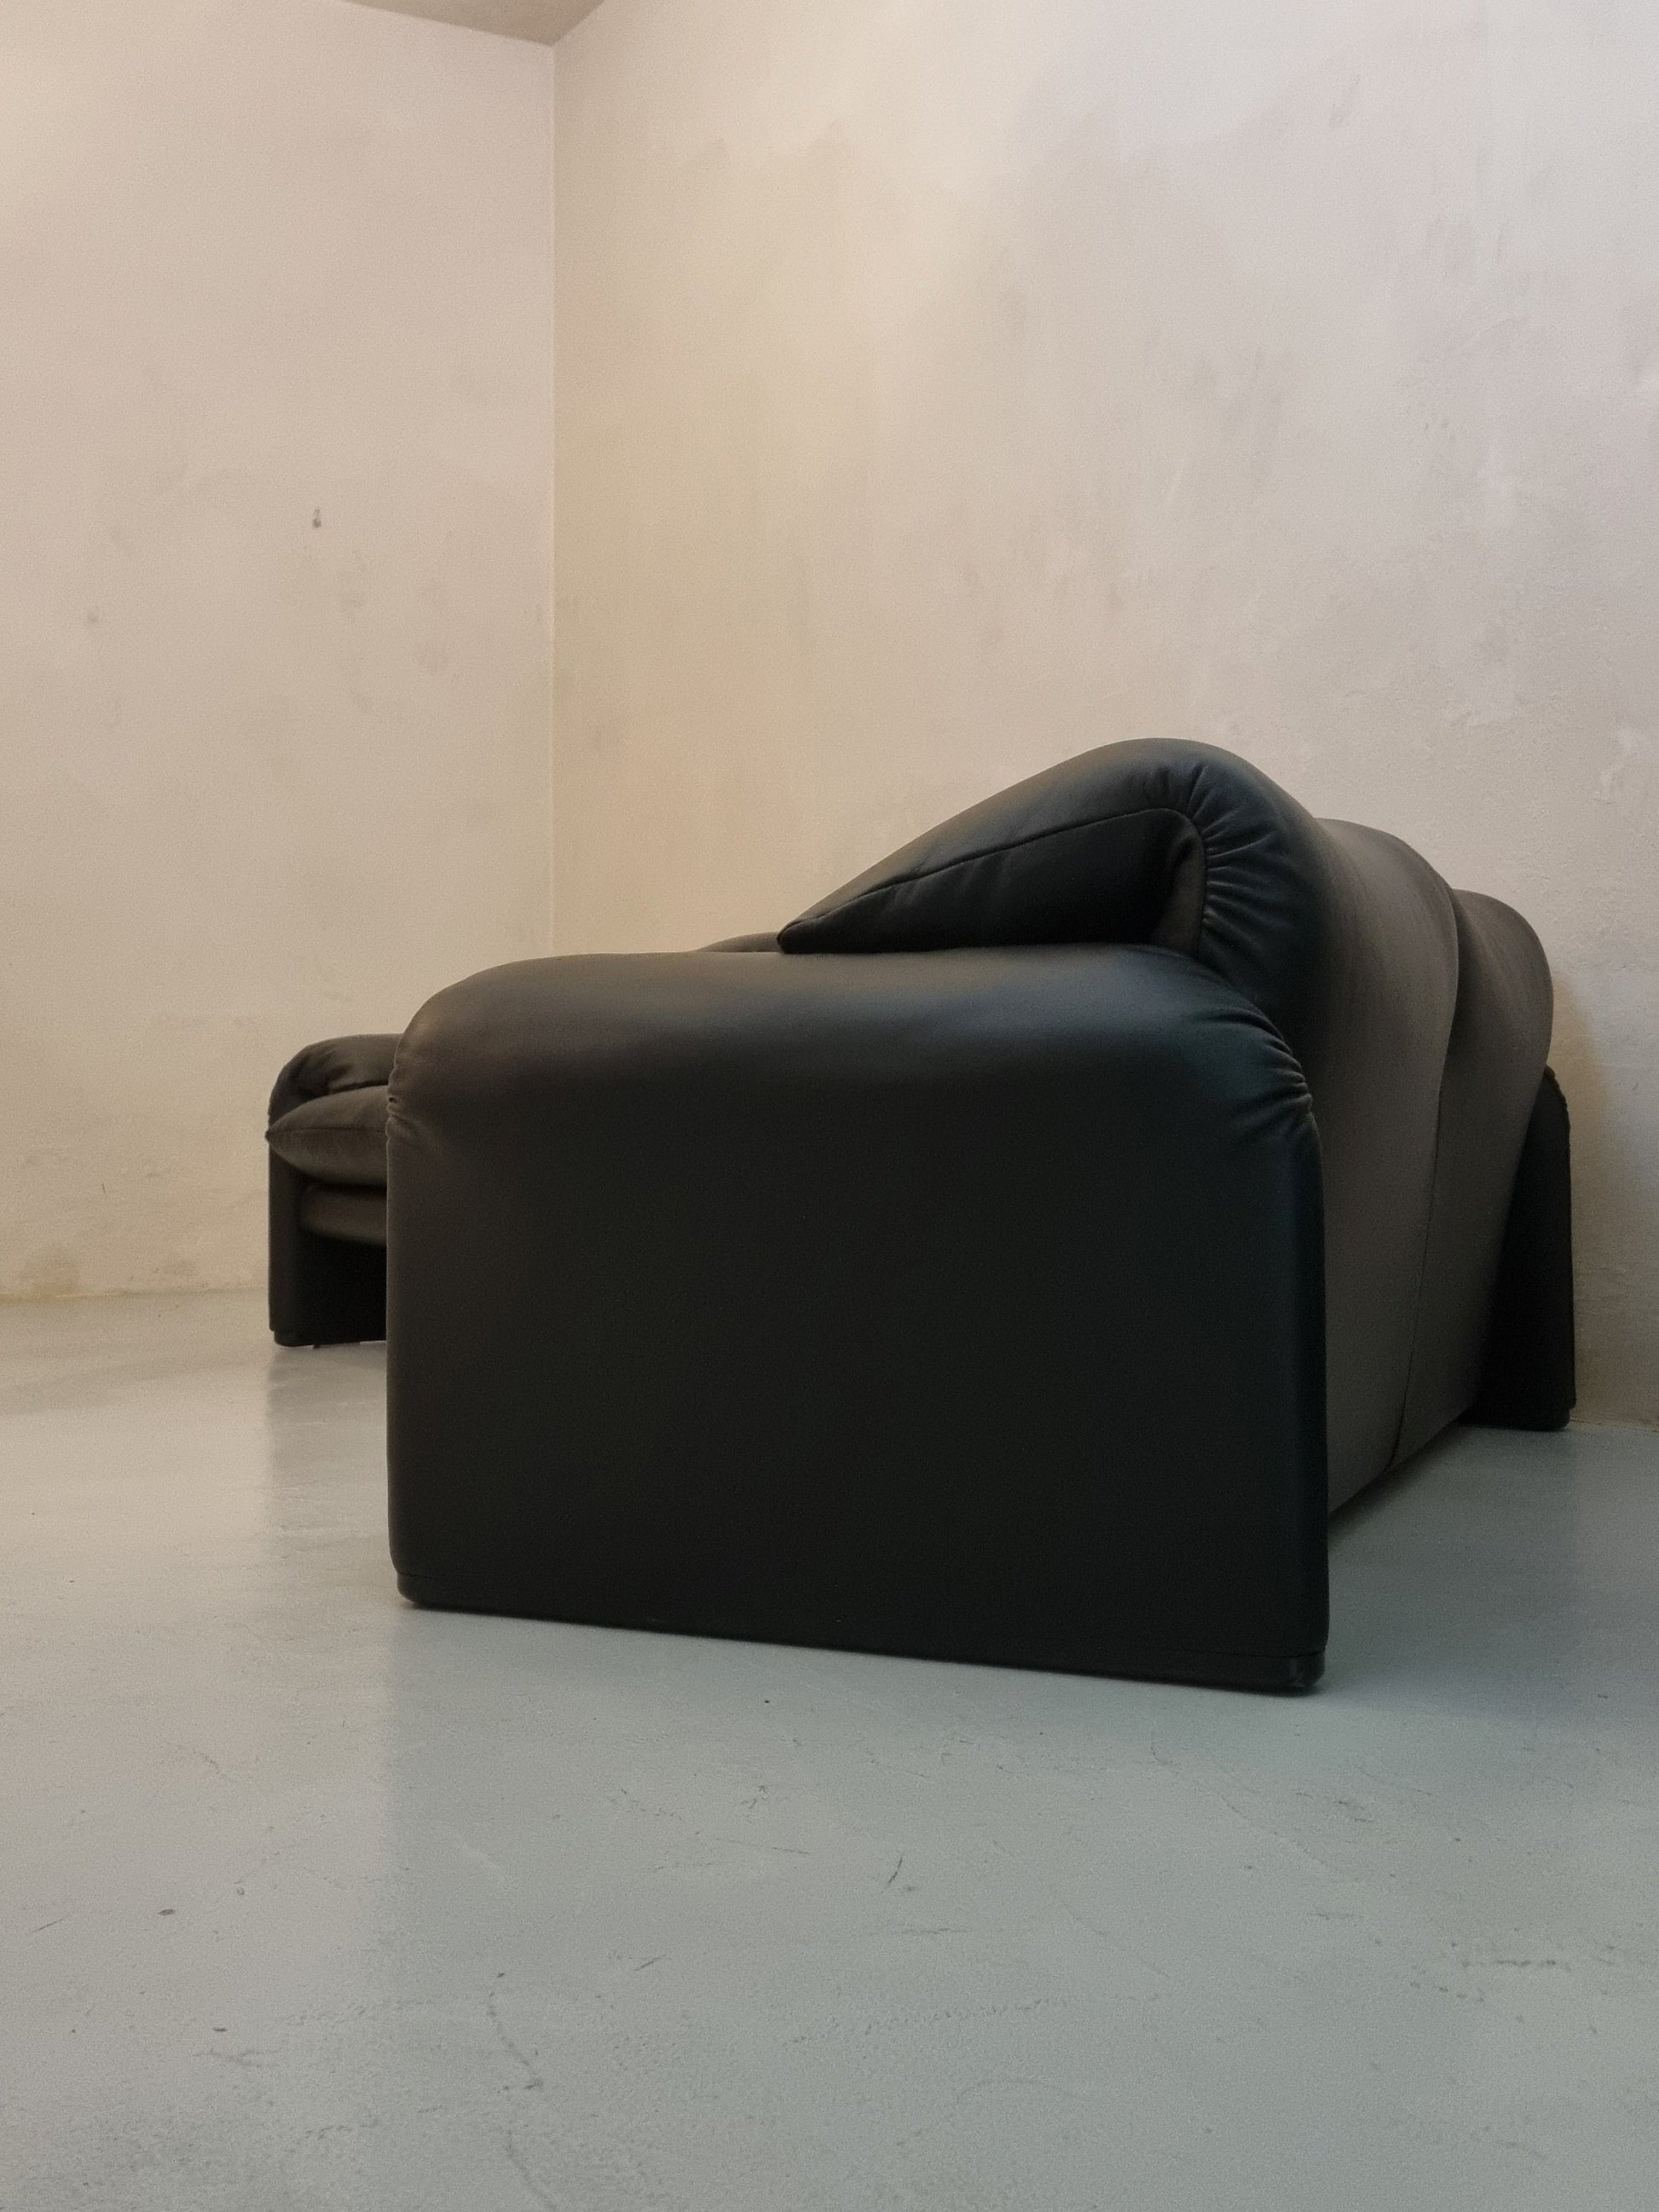 Black Maralunga Chair and Sofa Set Sofas